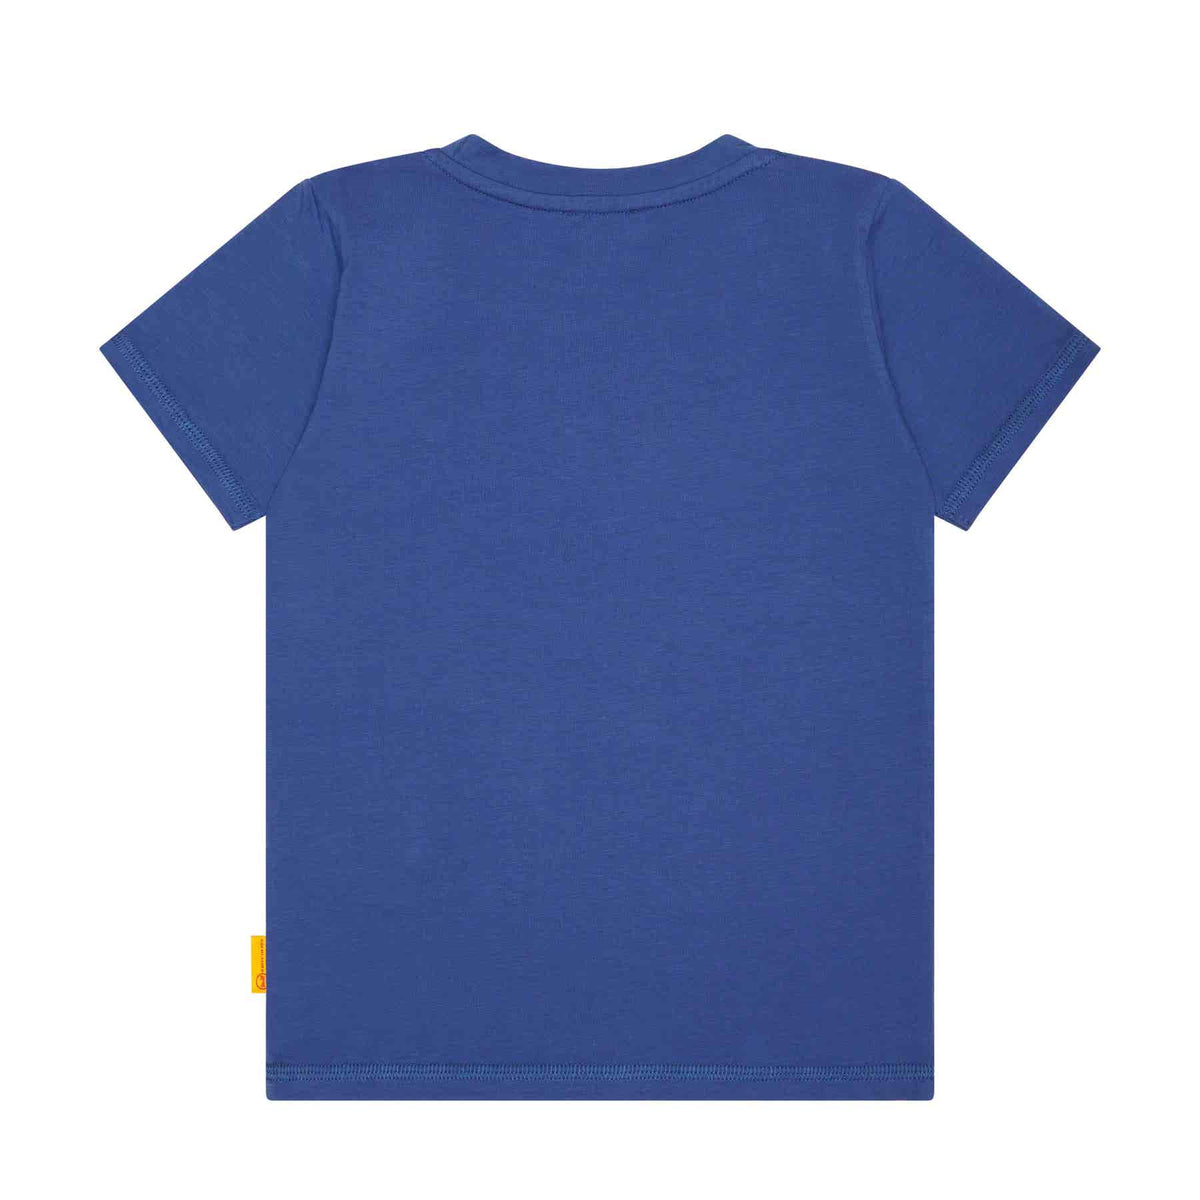 Jungen T-Shirt L000041018 6094 Blau